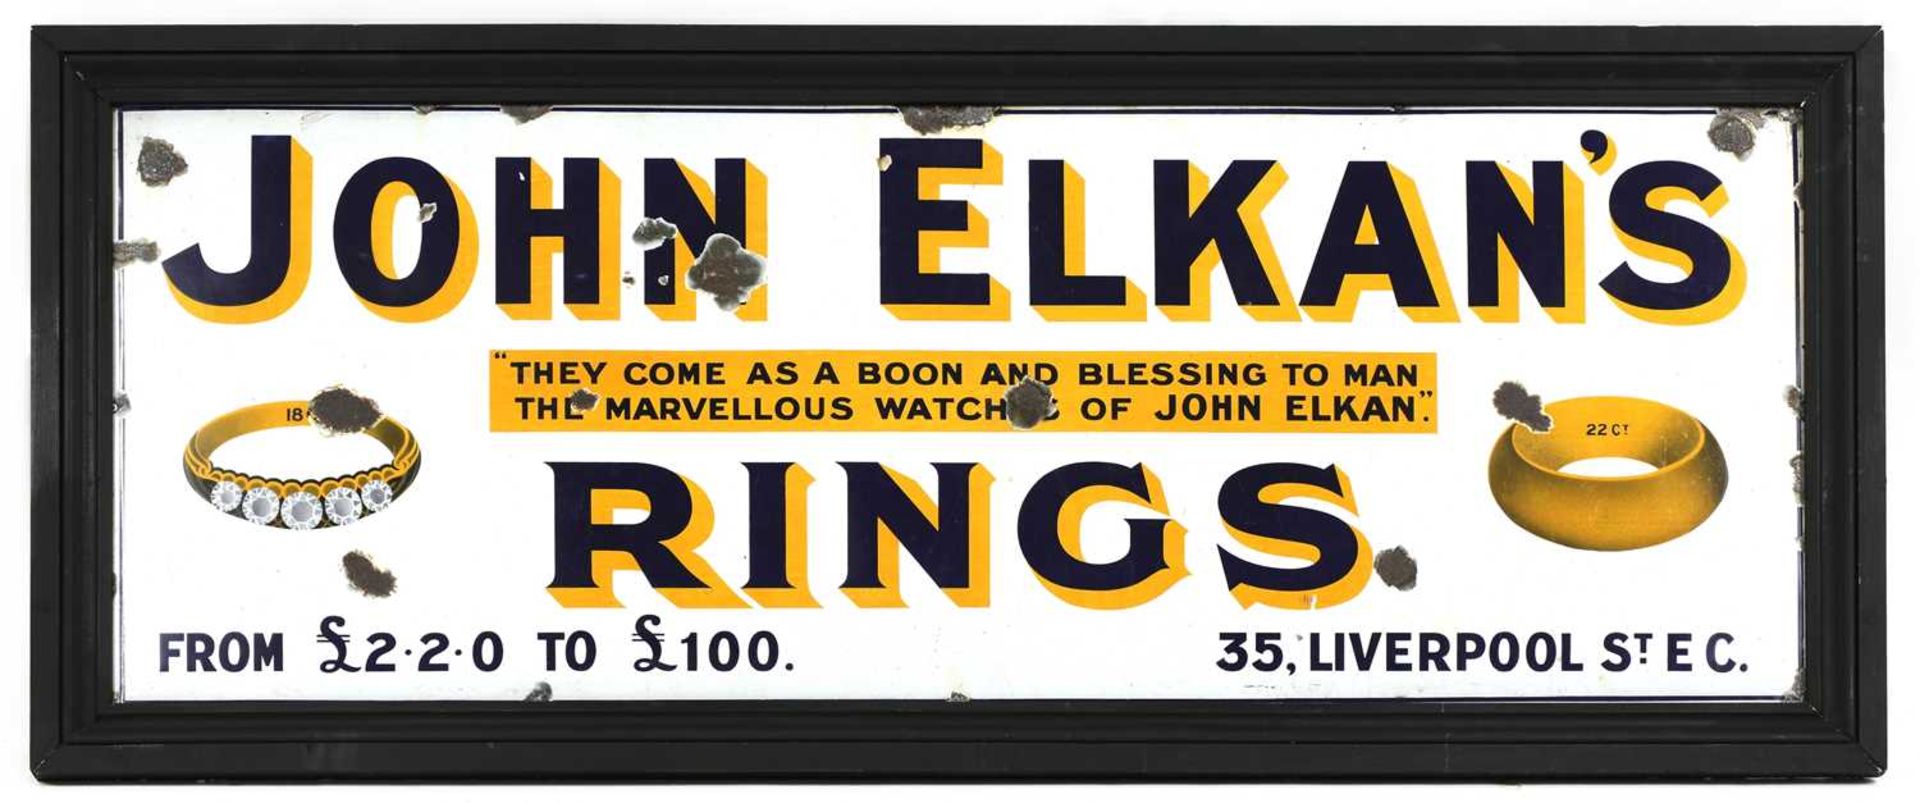 JOHN ELKAN'S RINGS,